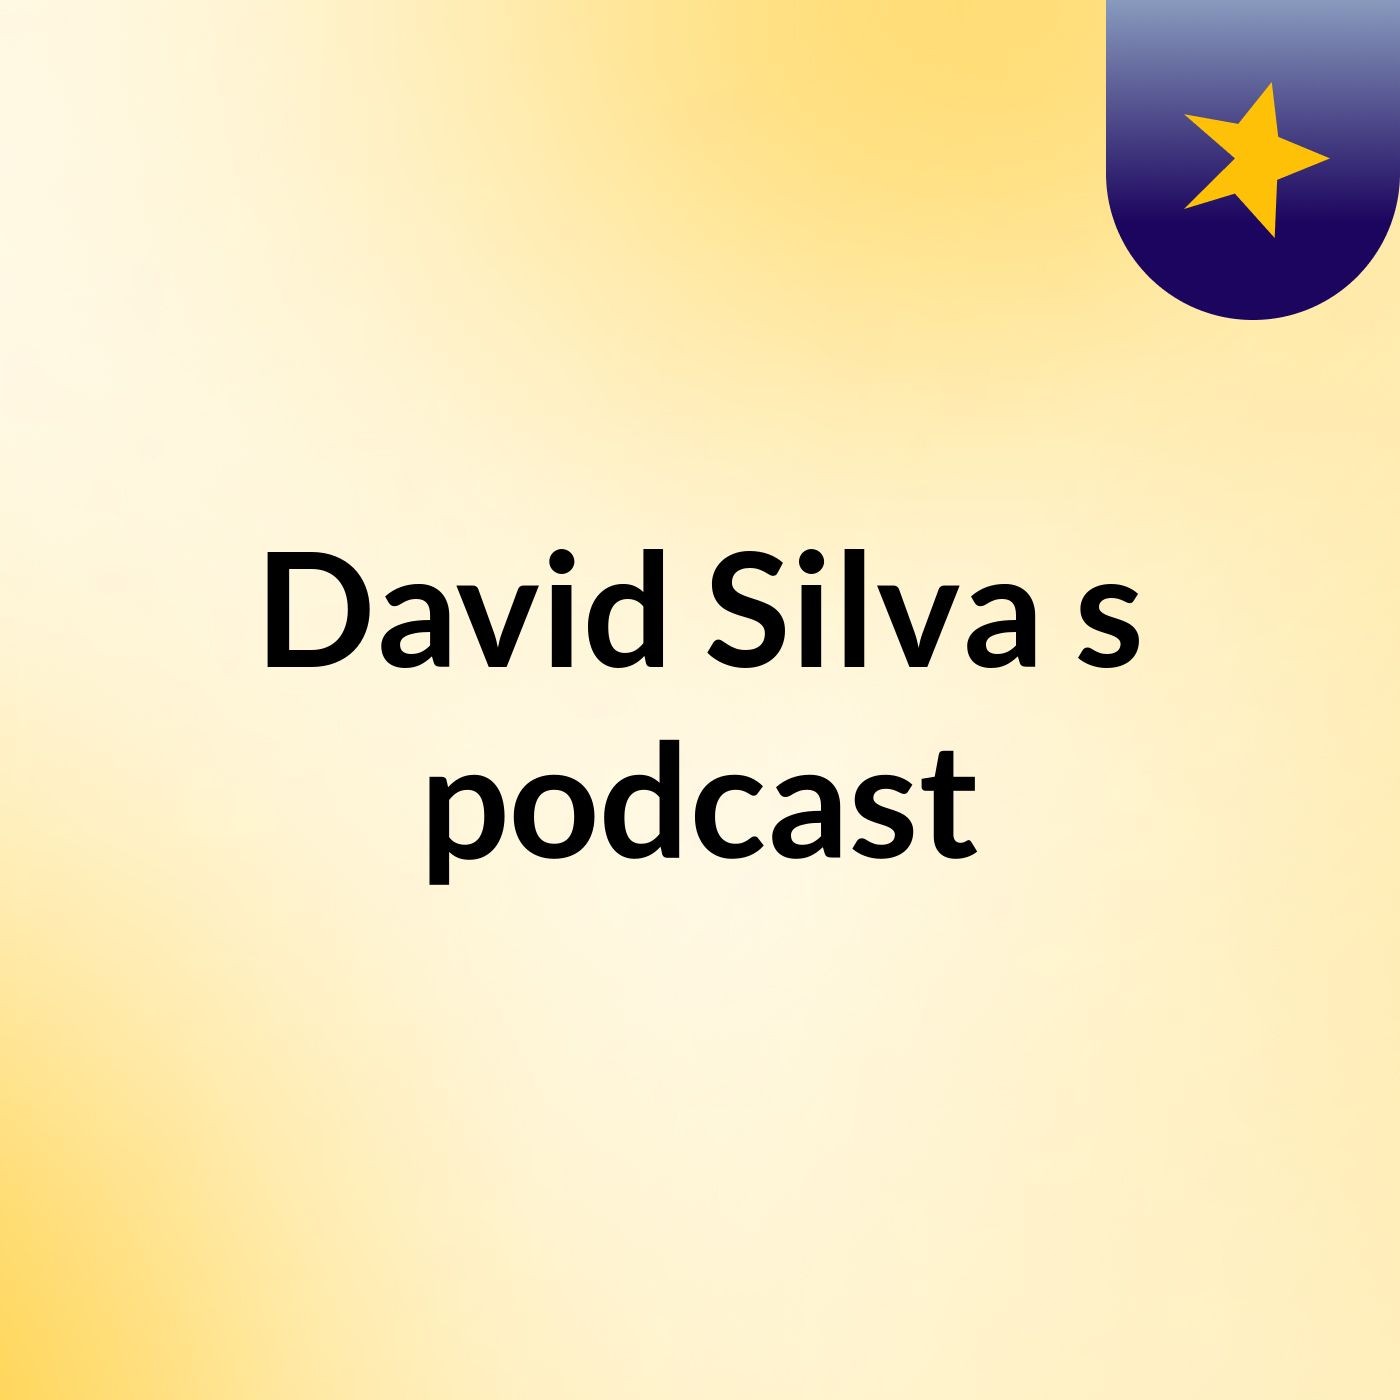 David Silva's podcast